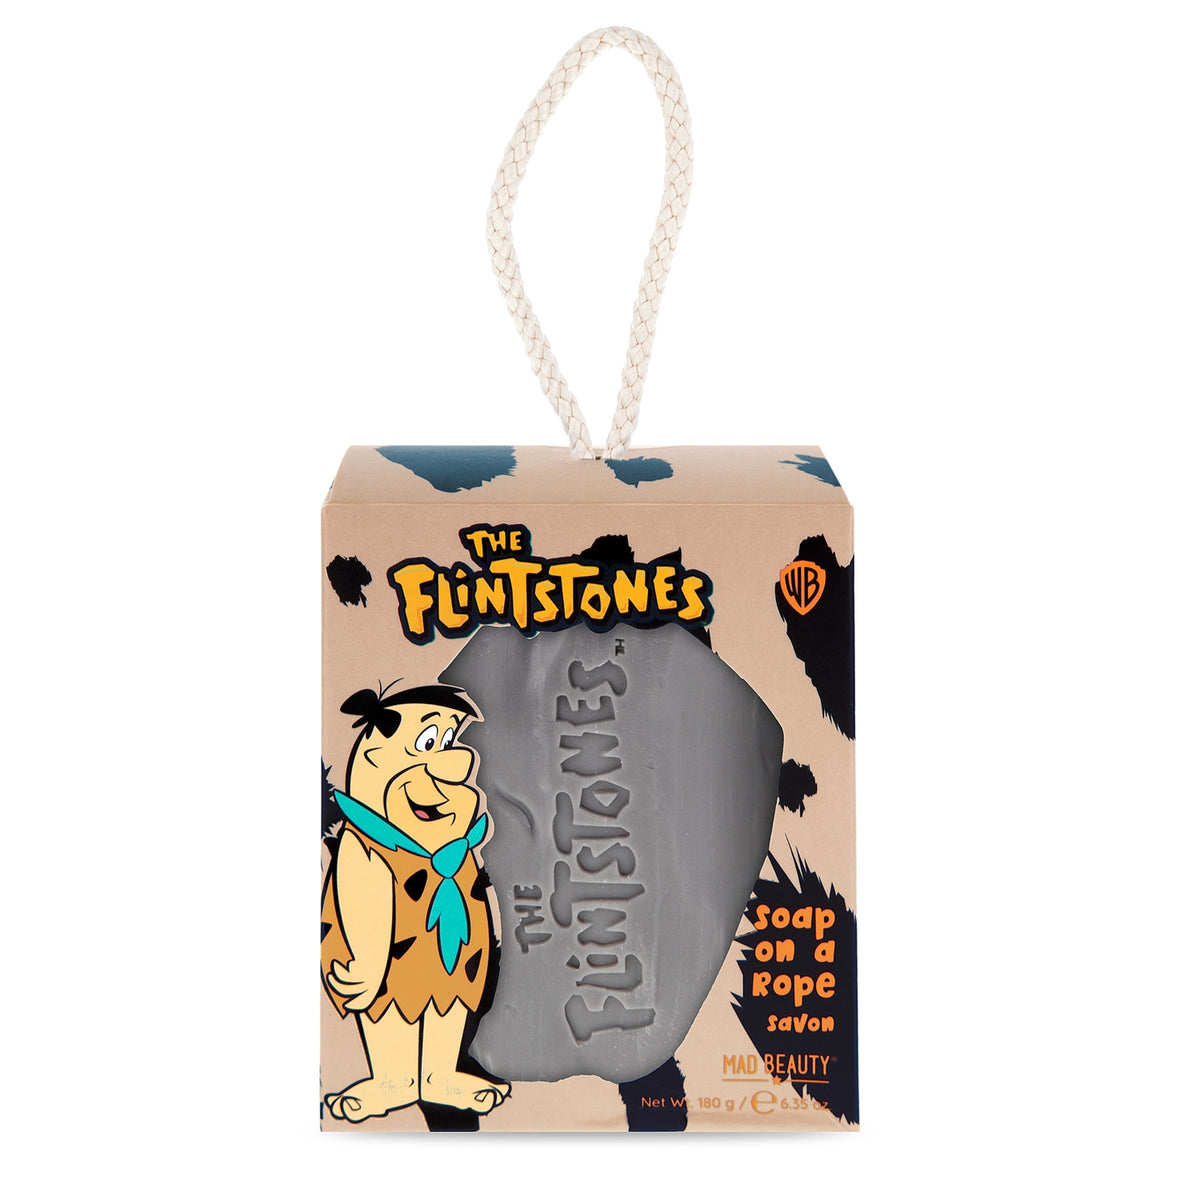 Flintstones Fred Flintstone Soap On A Rope